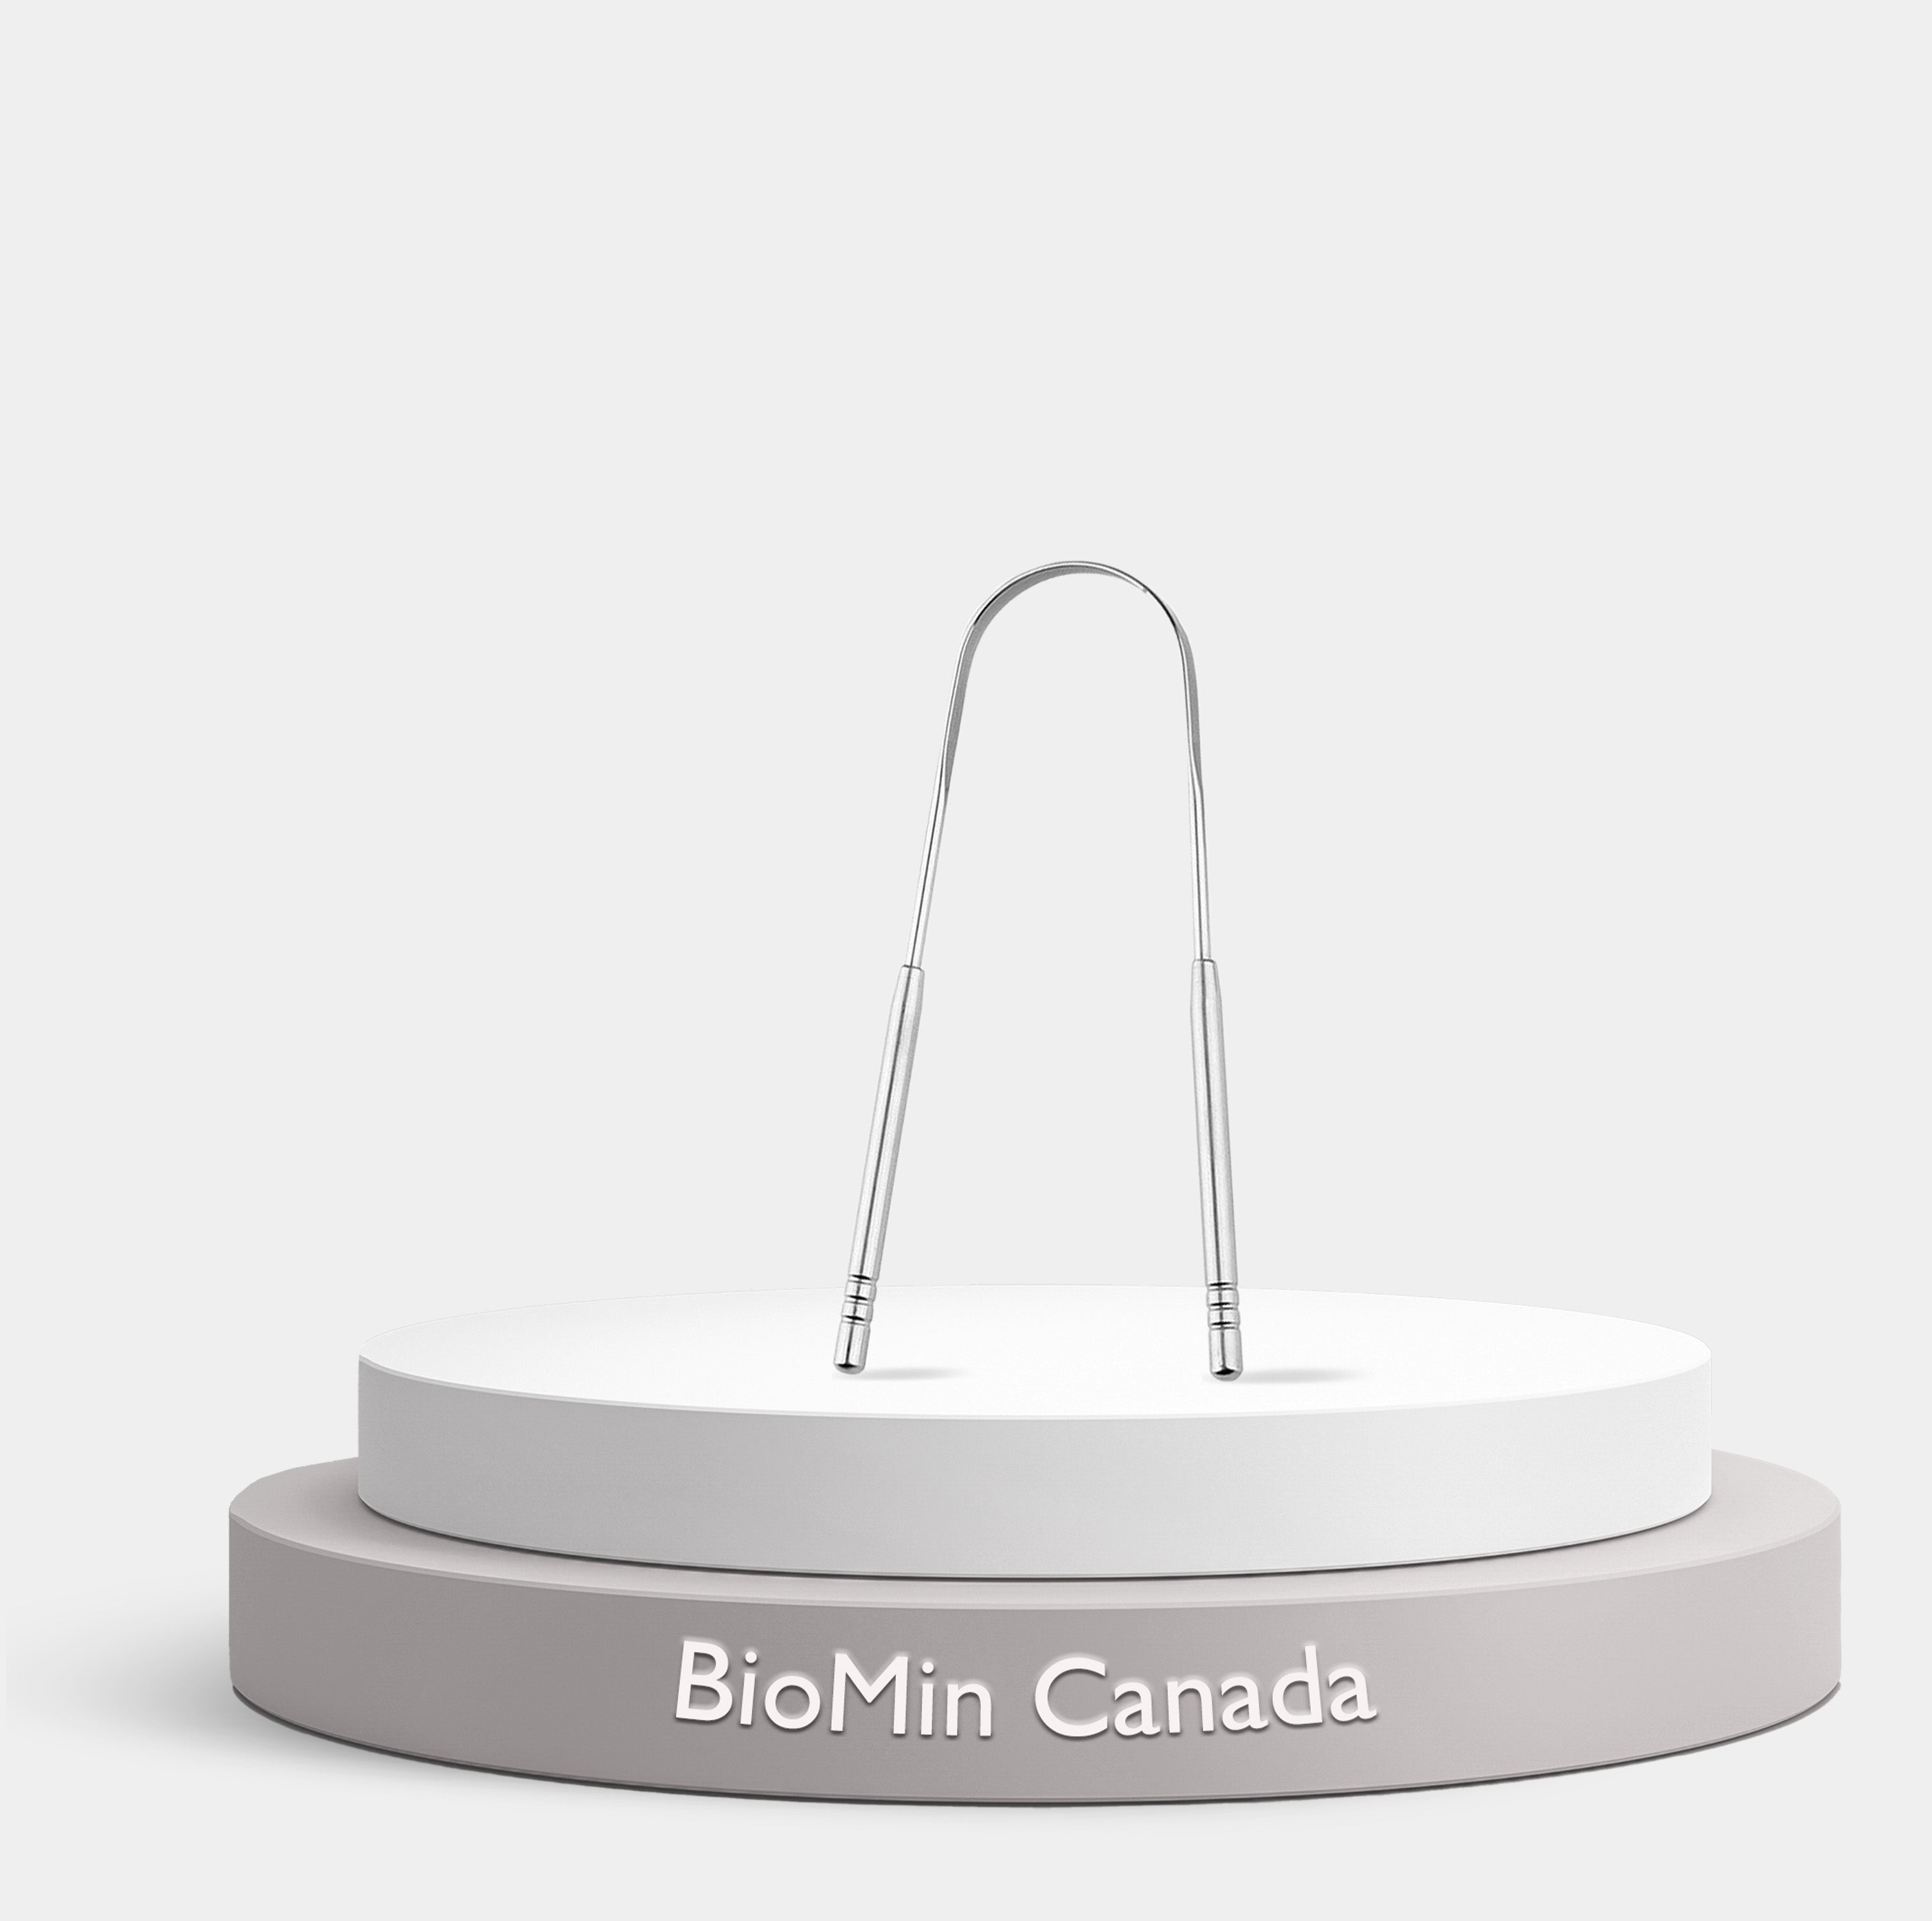 Kit dental BioMin F